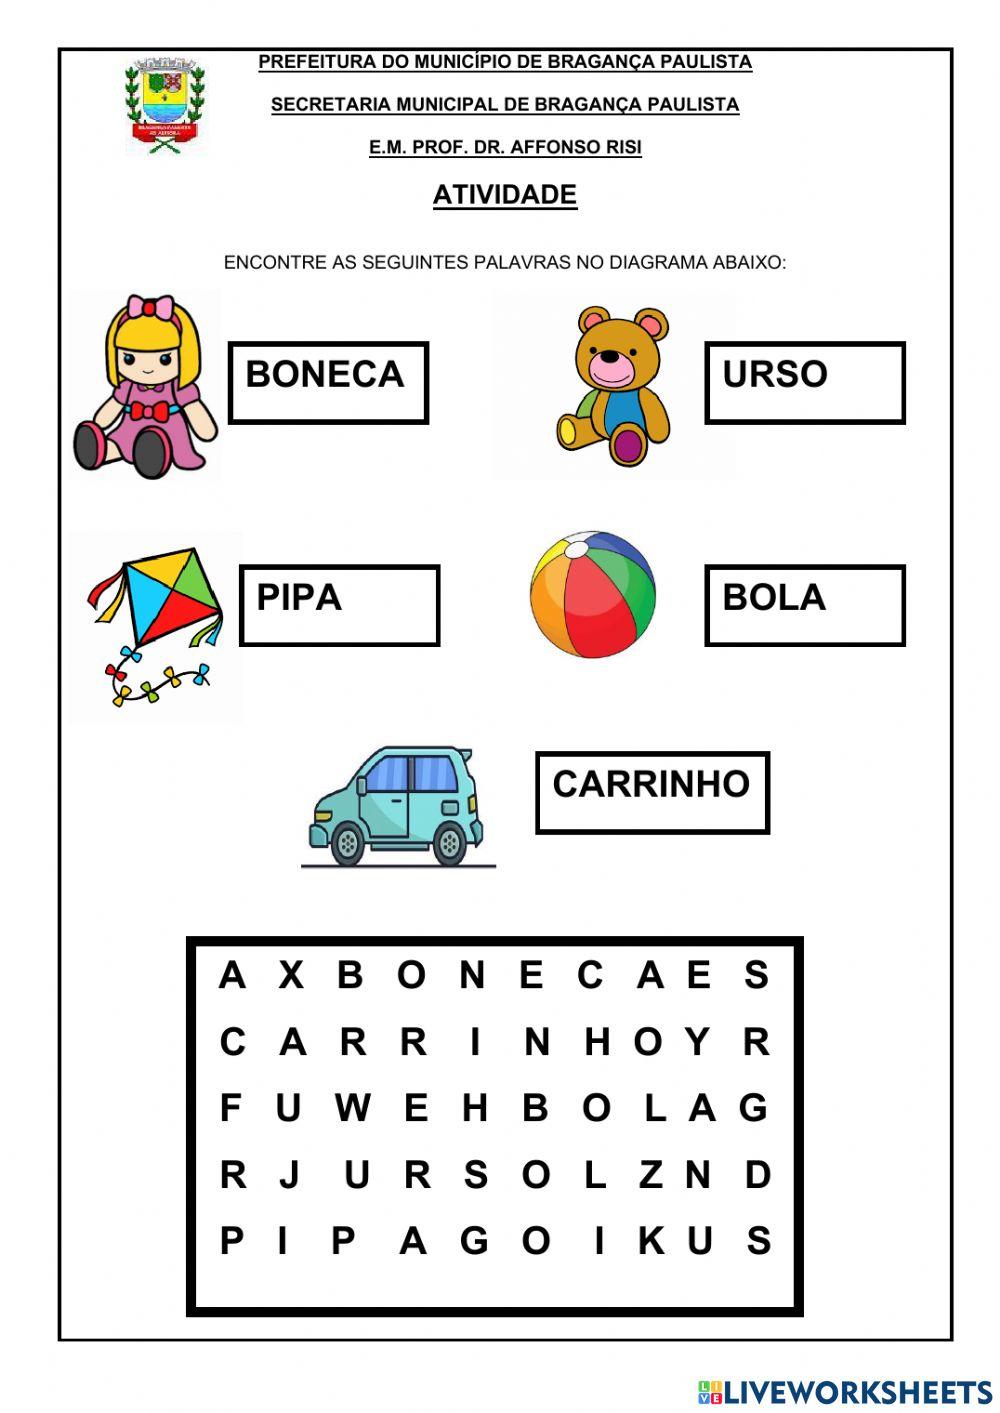 Arquivos caça-palavras - Atividades para a Educação Infantil